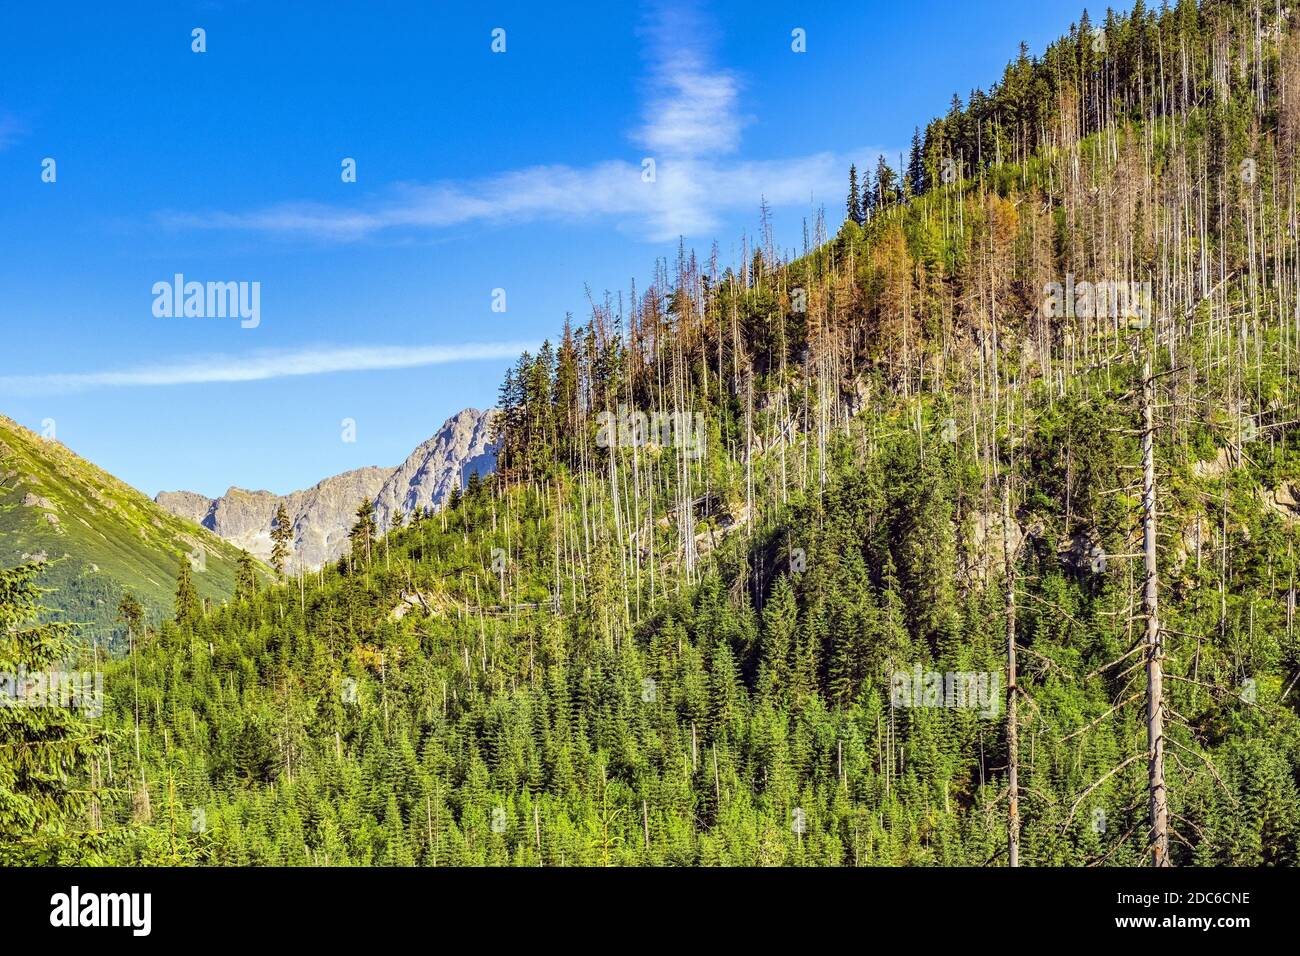 Vista panoramica della valle di Rybi Potok - Dolina Rybiego potoku - con foresta che copre le pendici del crinale Siedem Granatow nei Monti Tatra, vicino Zakop Foto Stock